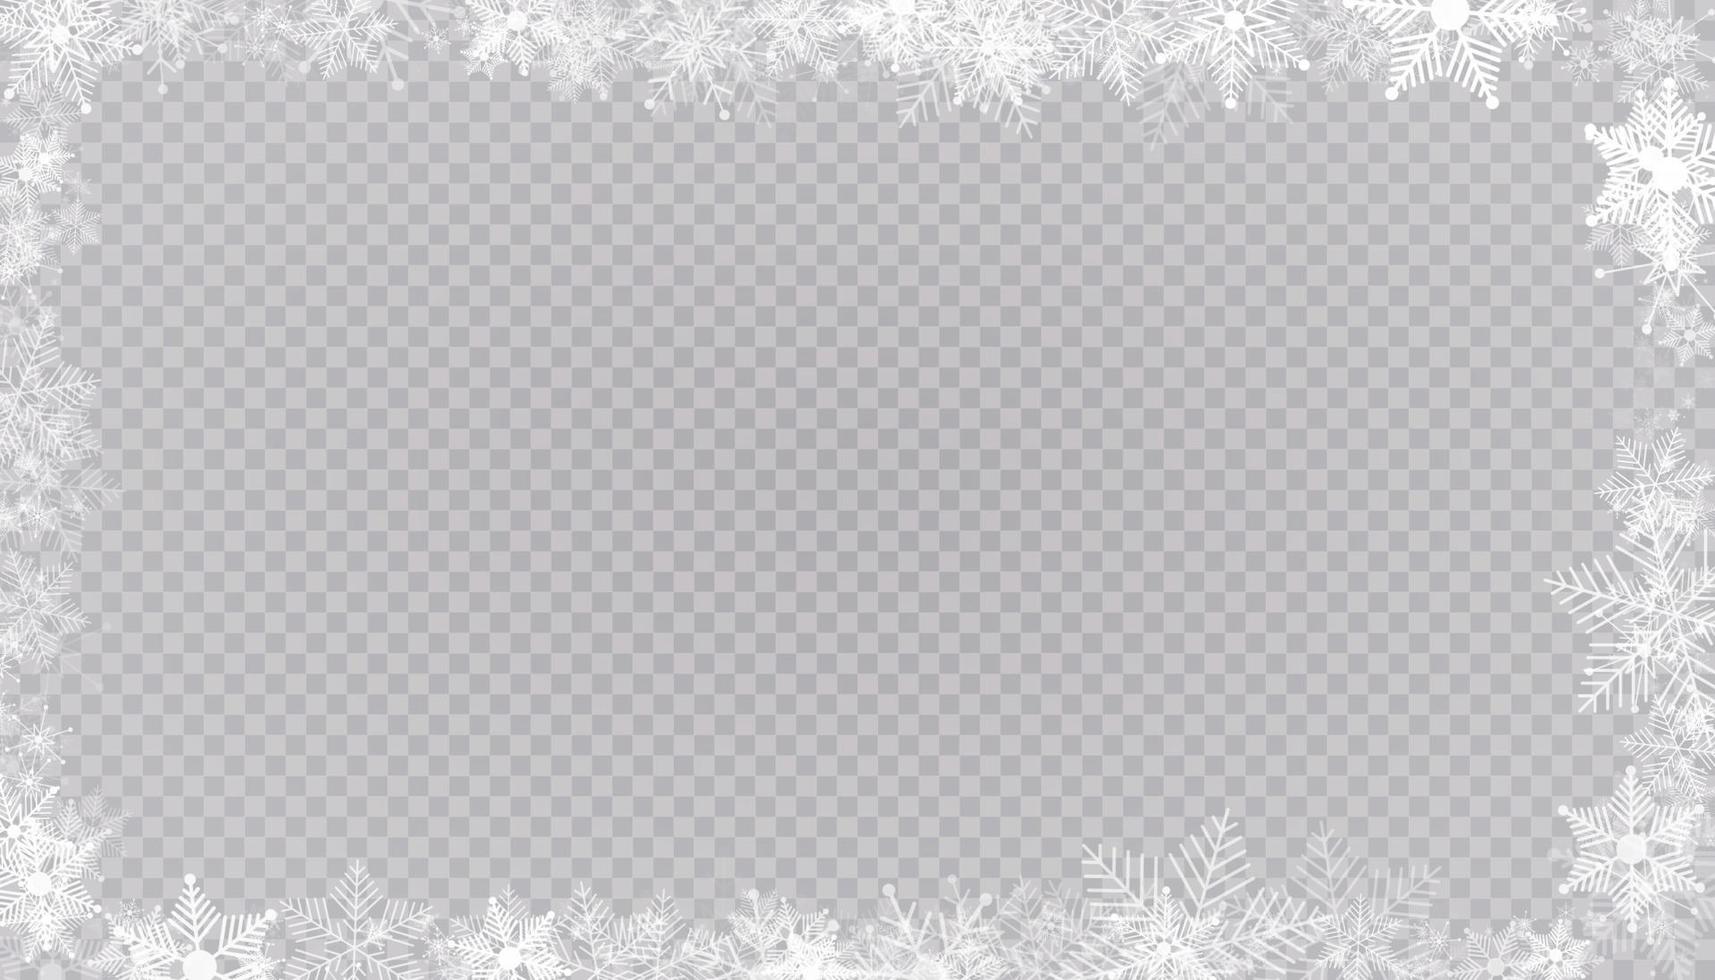 rechteckige Winter Schneerahmen Grenze mit Sternen, funkelt und Schneeflocken Hintergrund. festliche Weihnachtsfahne, Neujahrsgrußkarte, Postkarte oder Einladungsvektorillustration vektor